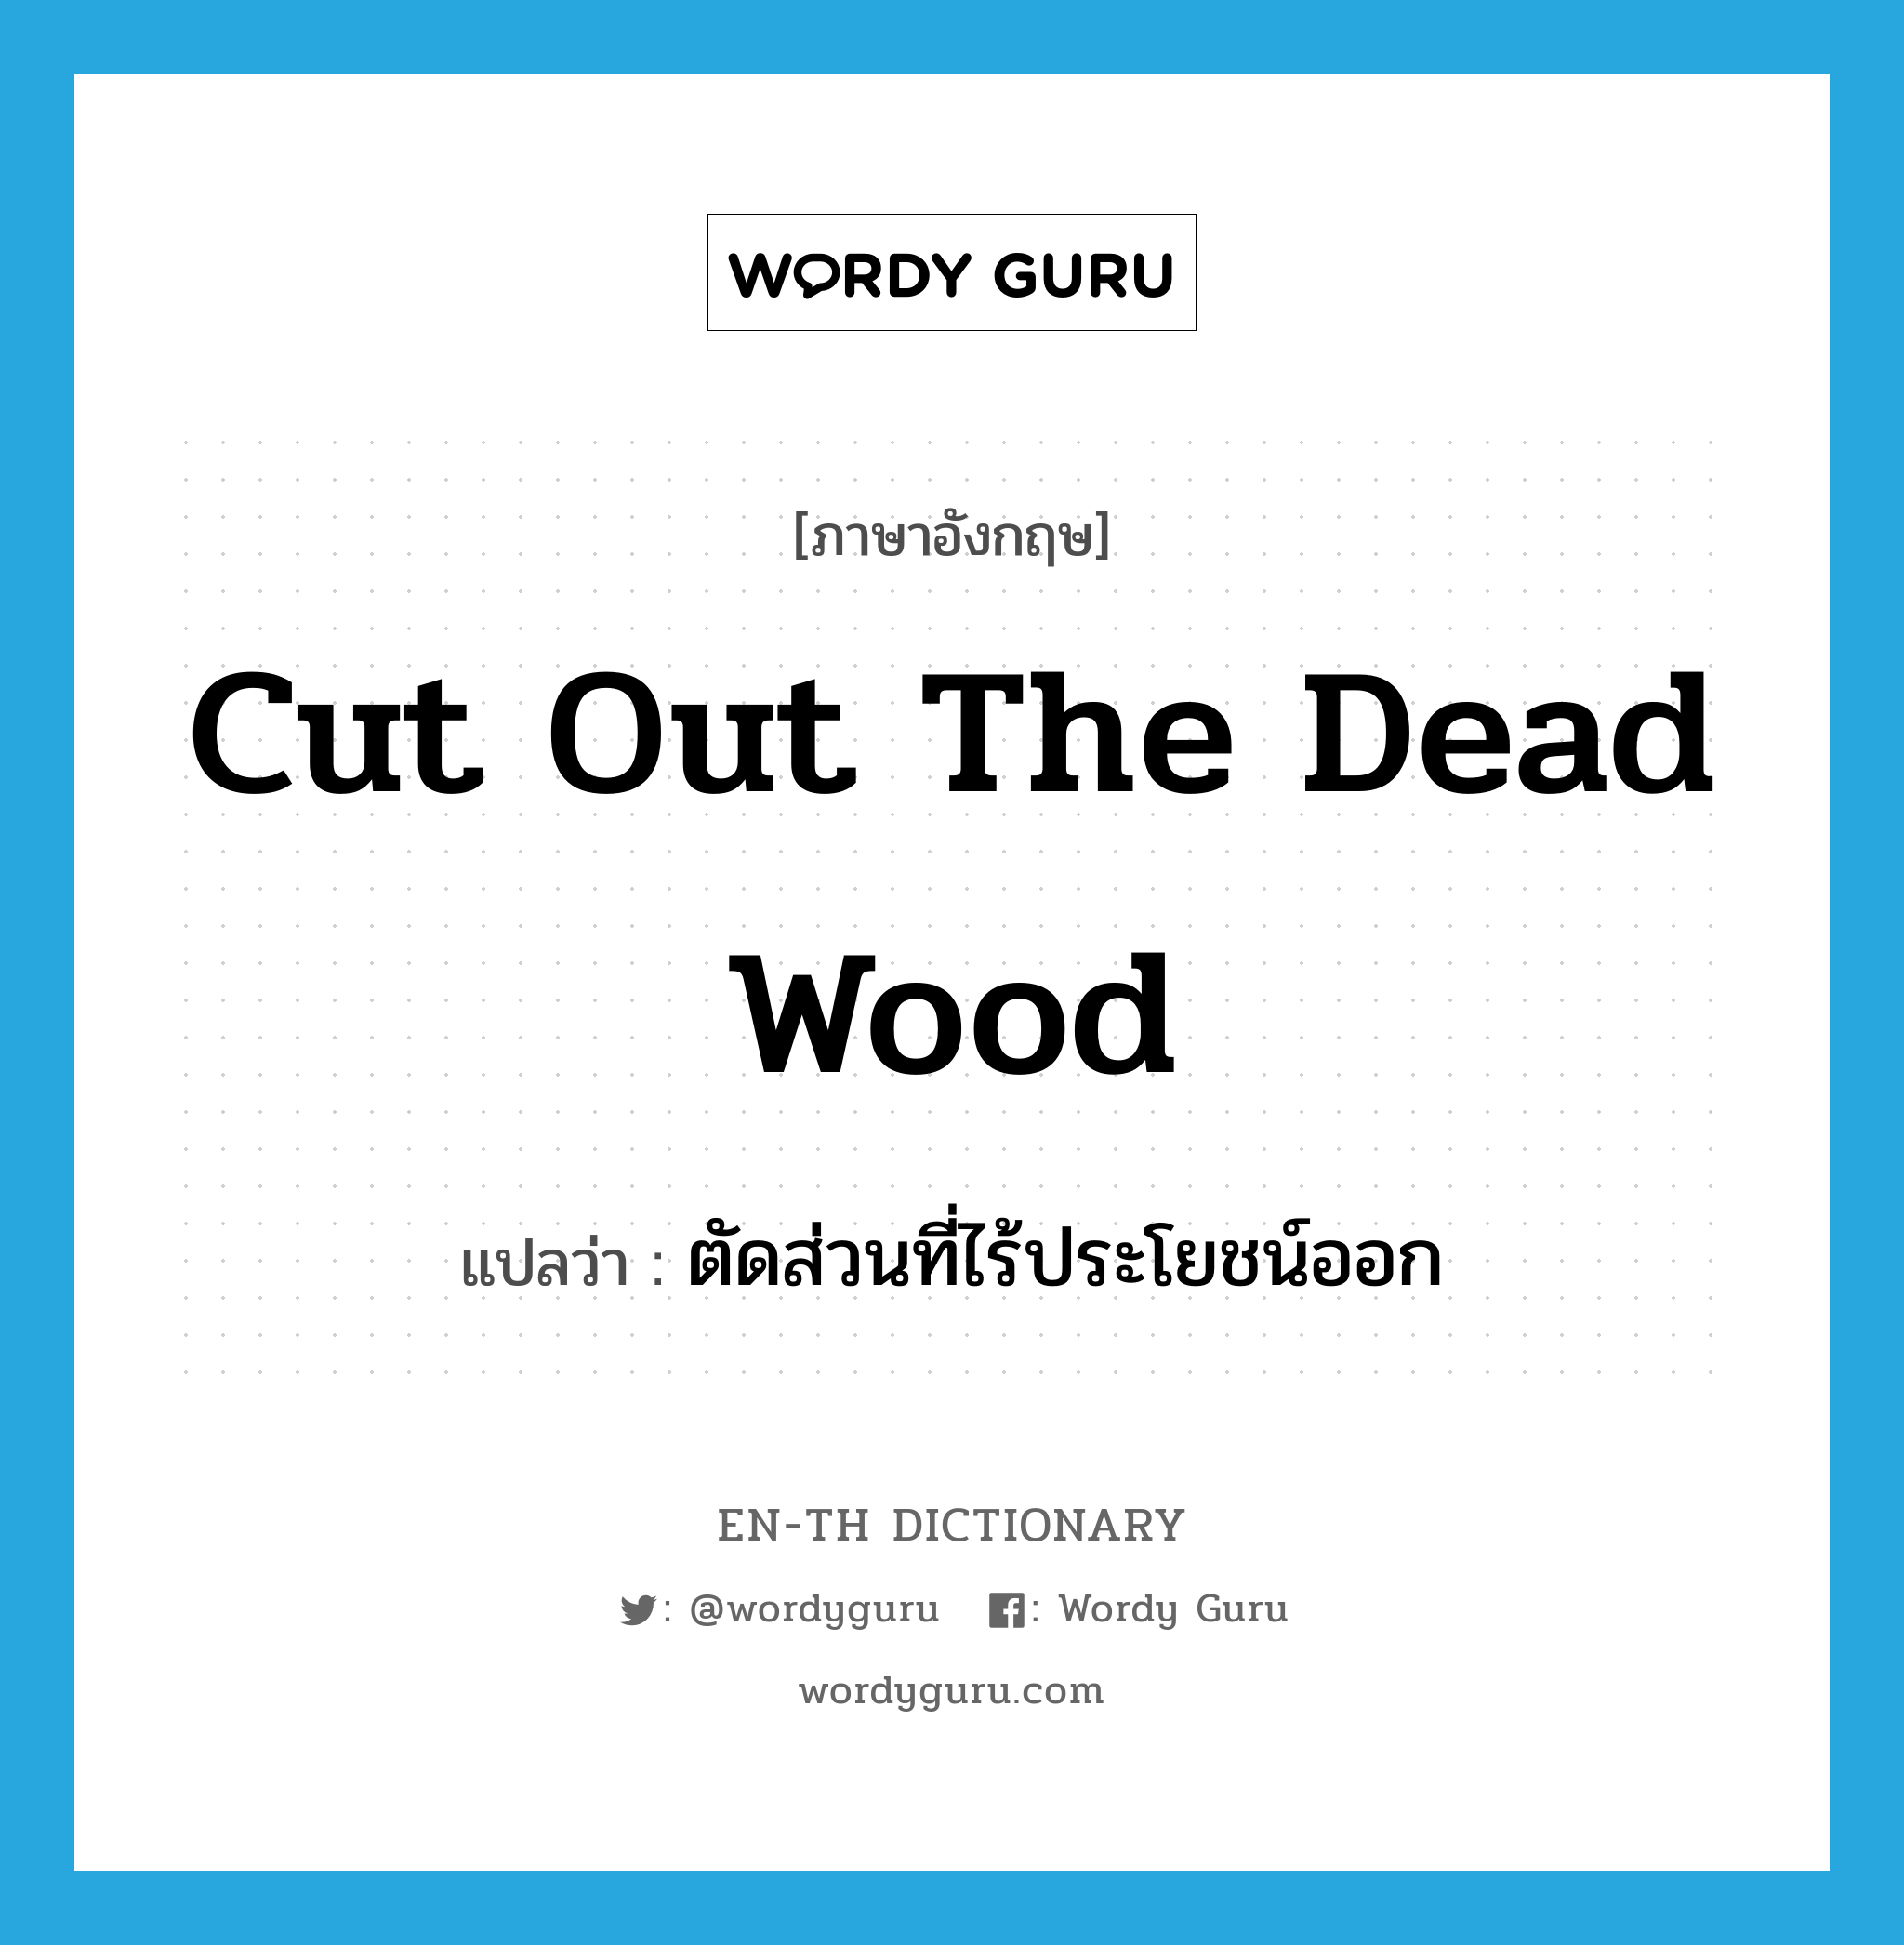 ตัดส่วนที่ไร้ประโยชน์ออก ภาษาอังกฤษ?, คำศัพท์ภาษาอังกฤษ ตัดส่วนที่ไร้ประโยชน์ออก แปลว่า cut out the dead wood ประเภท IDM หมวด IDM